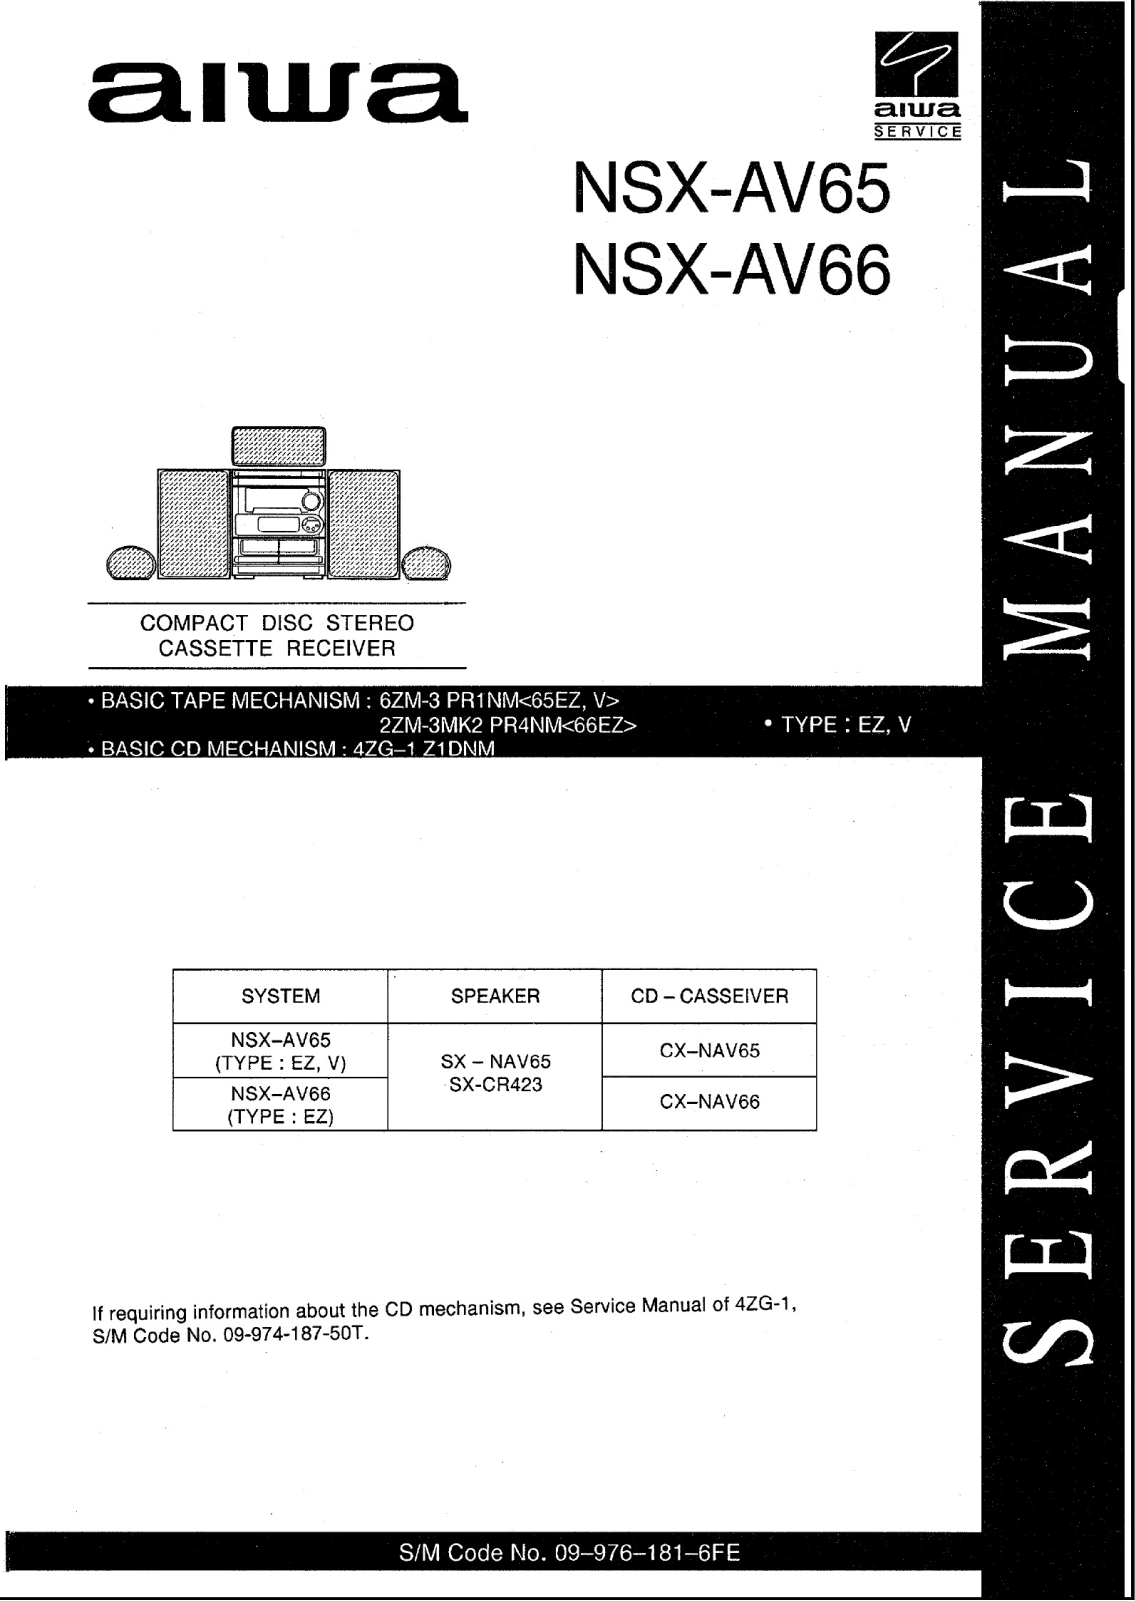 Aiwa NSXAV-65, NSXAV-66 Service manual